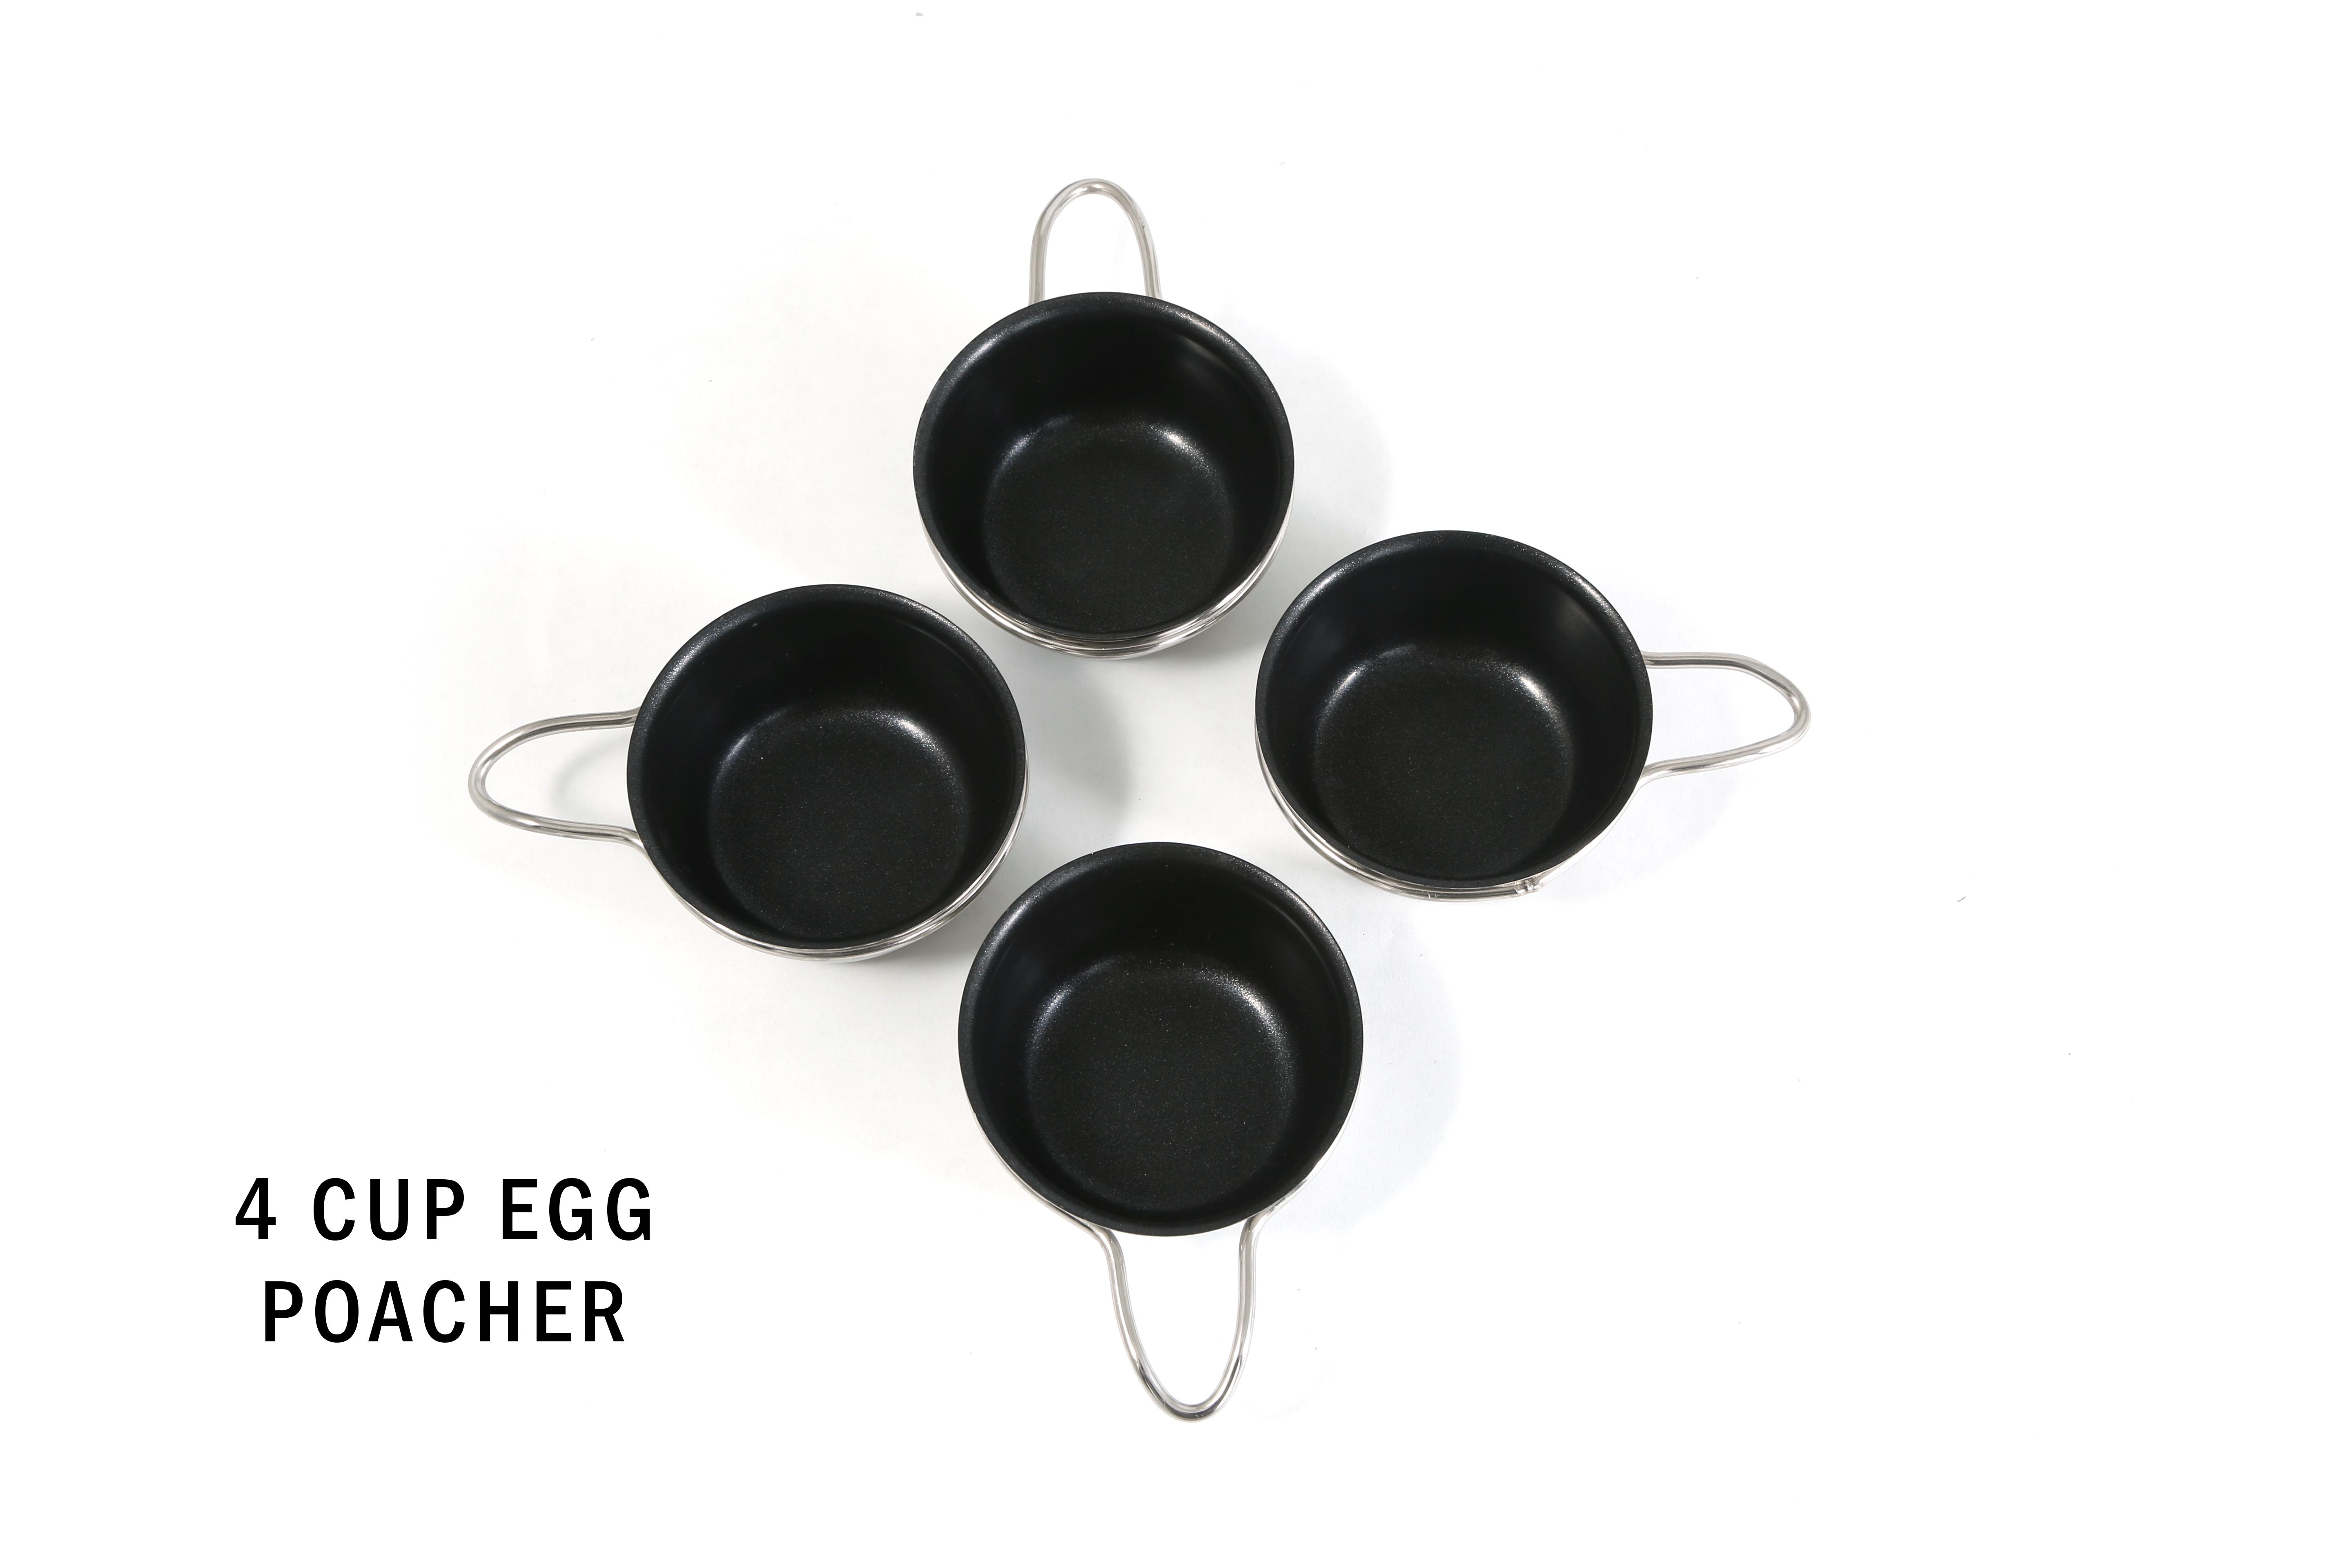 excelsteel egg poacher instructions